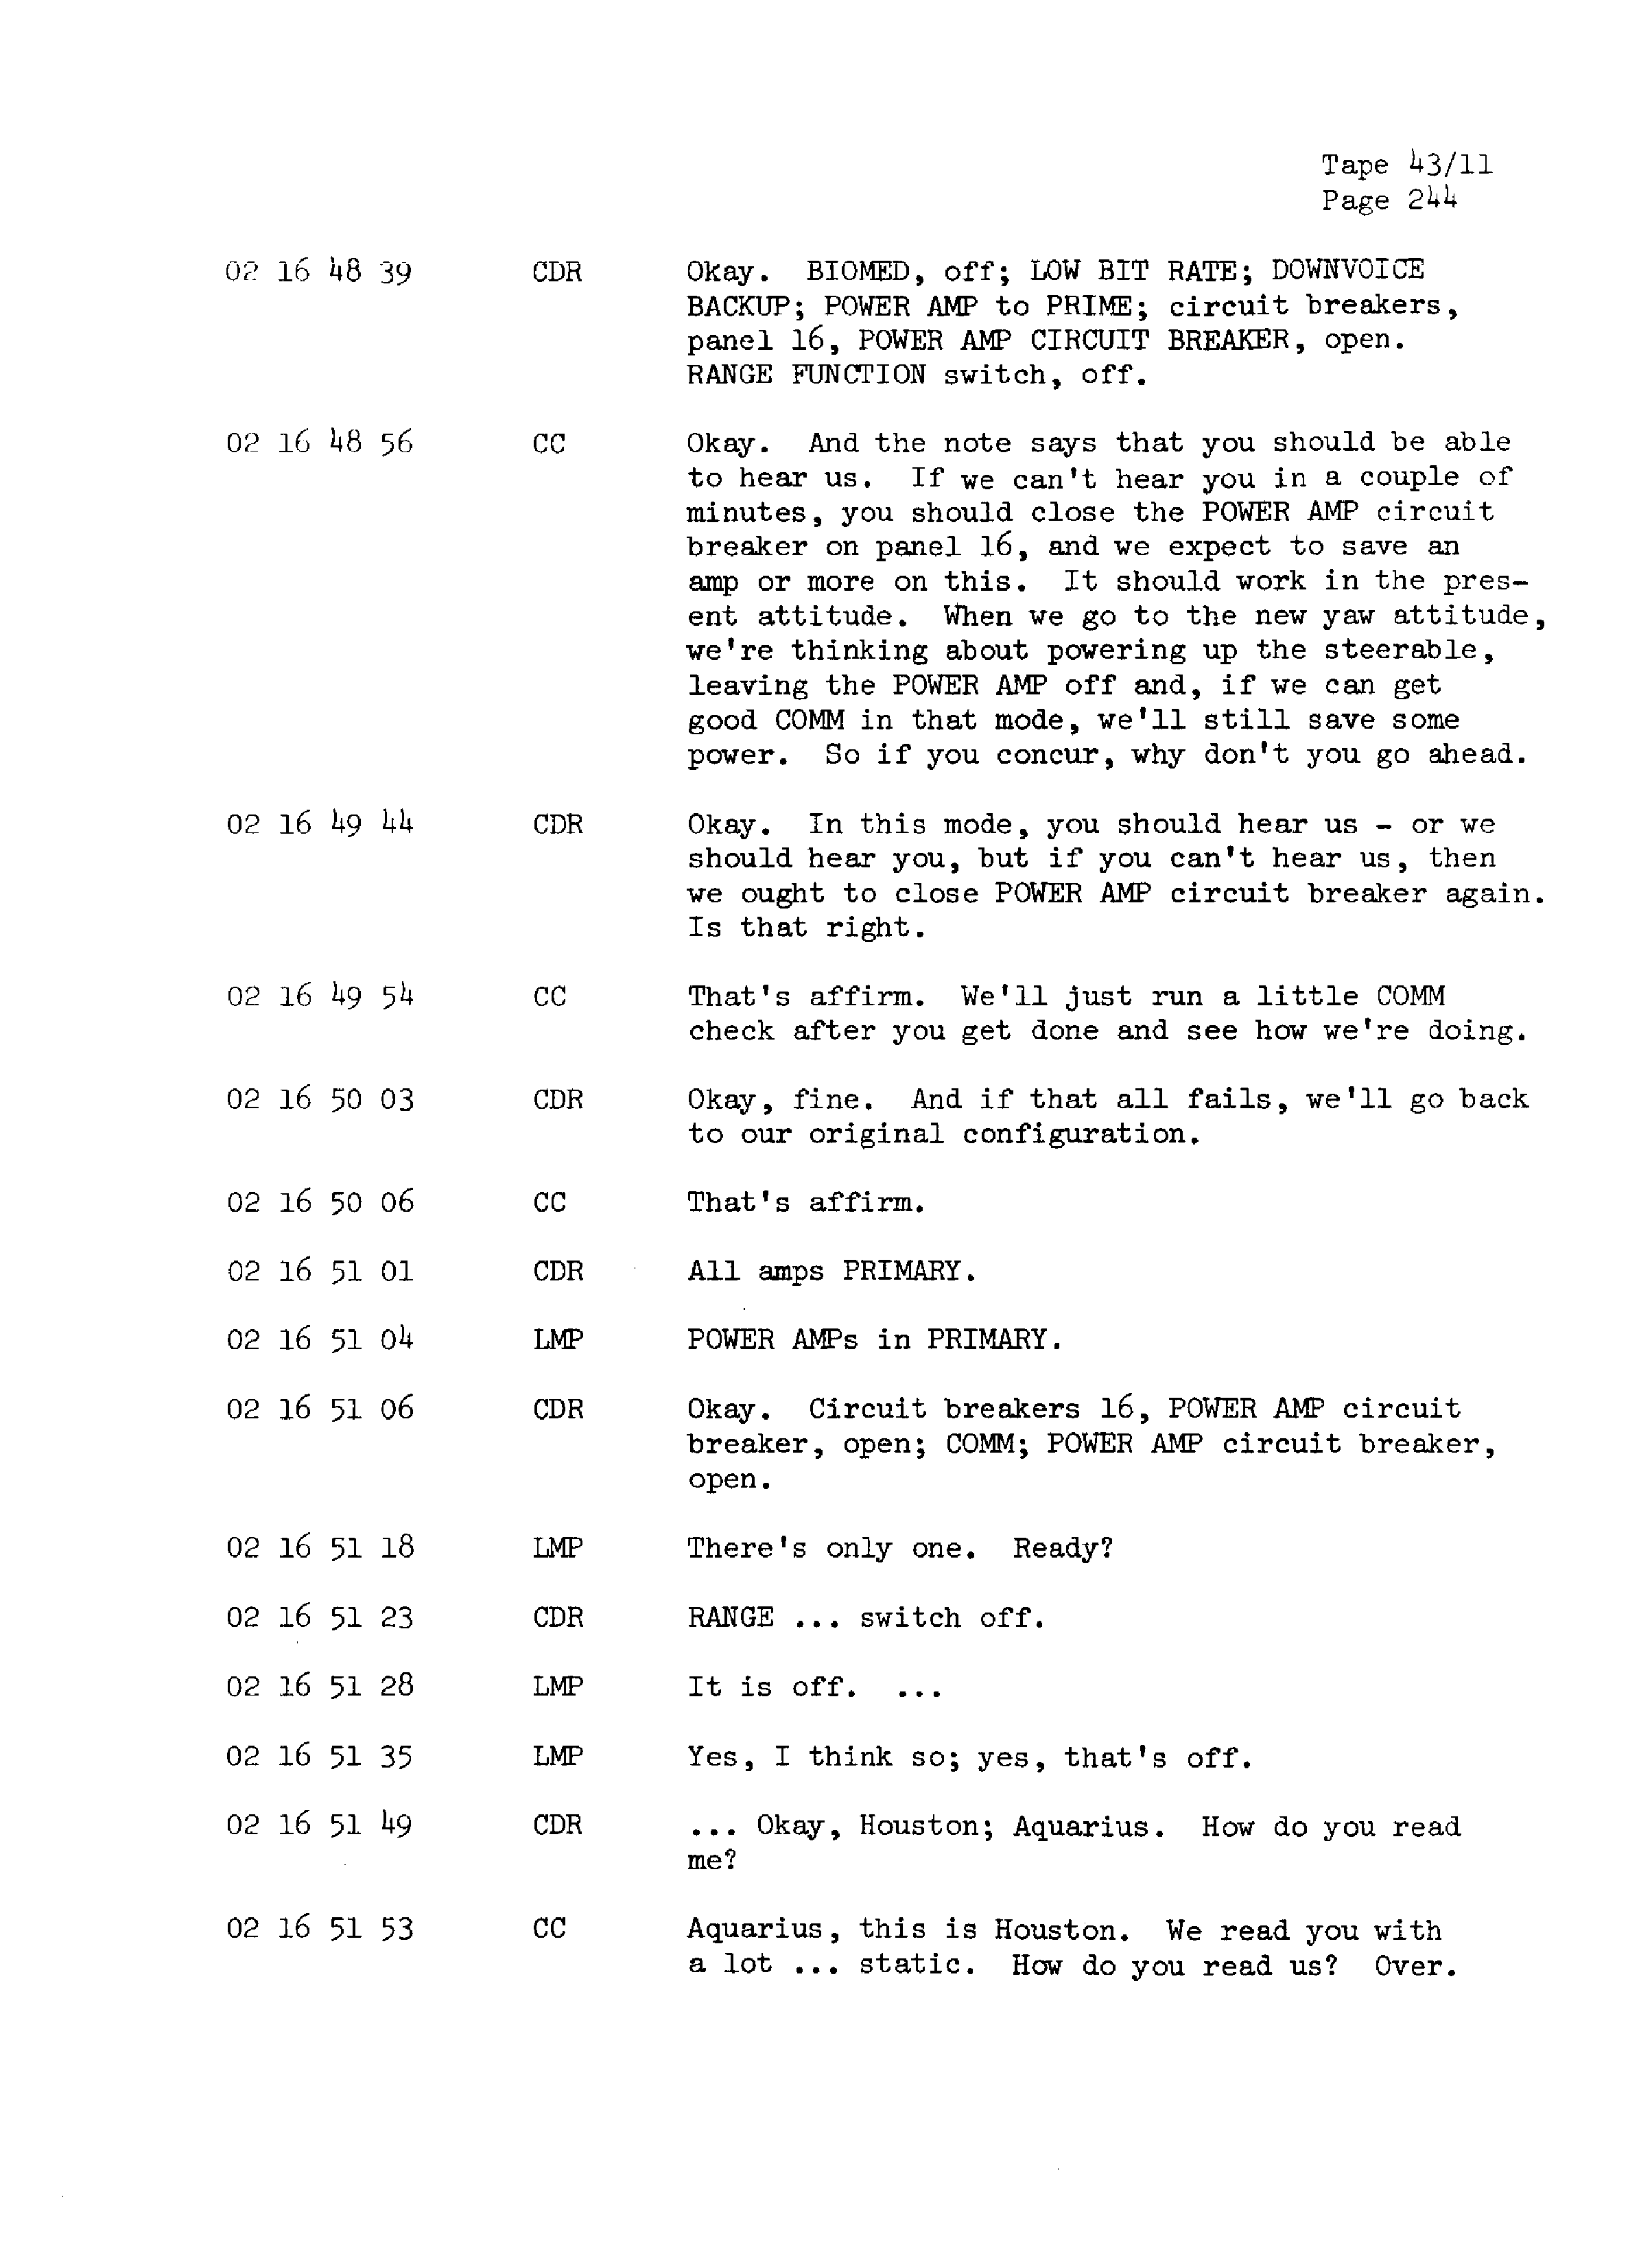 Page 251 of Apollo 13’s original transcript